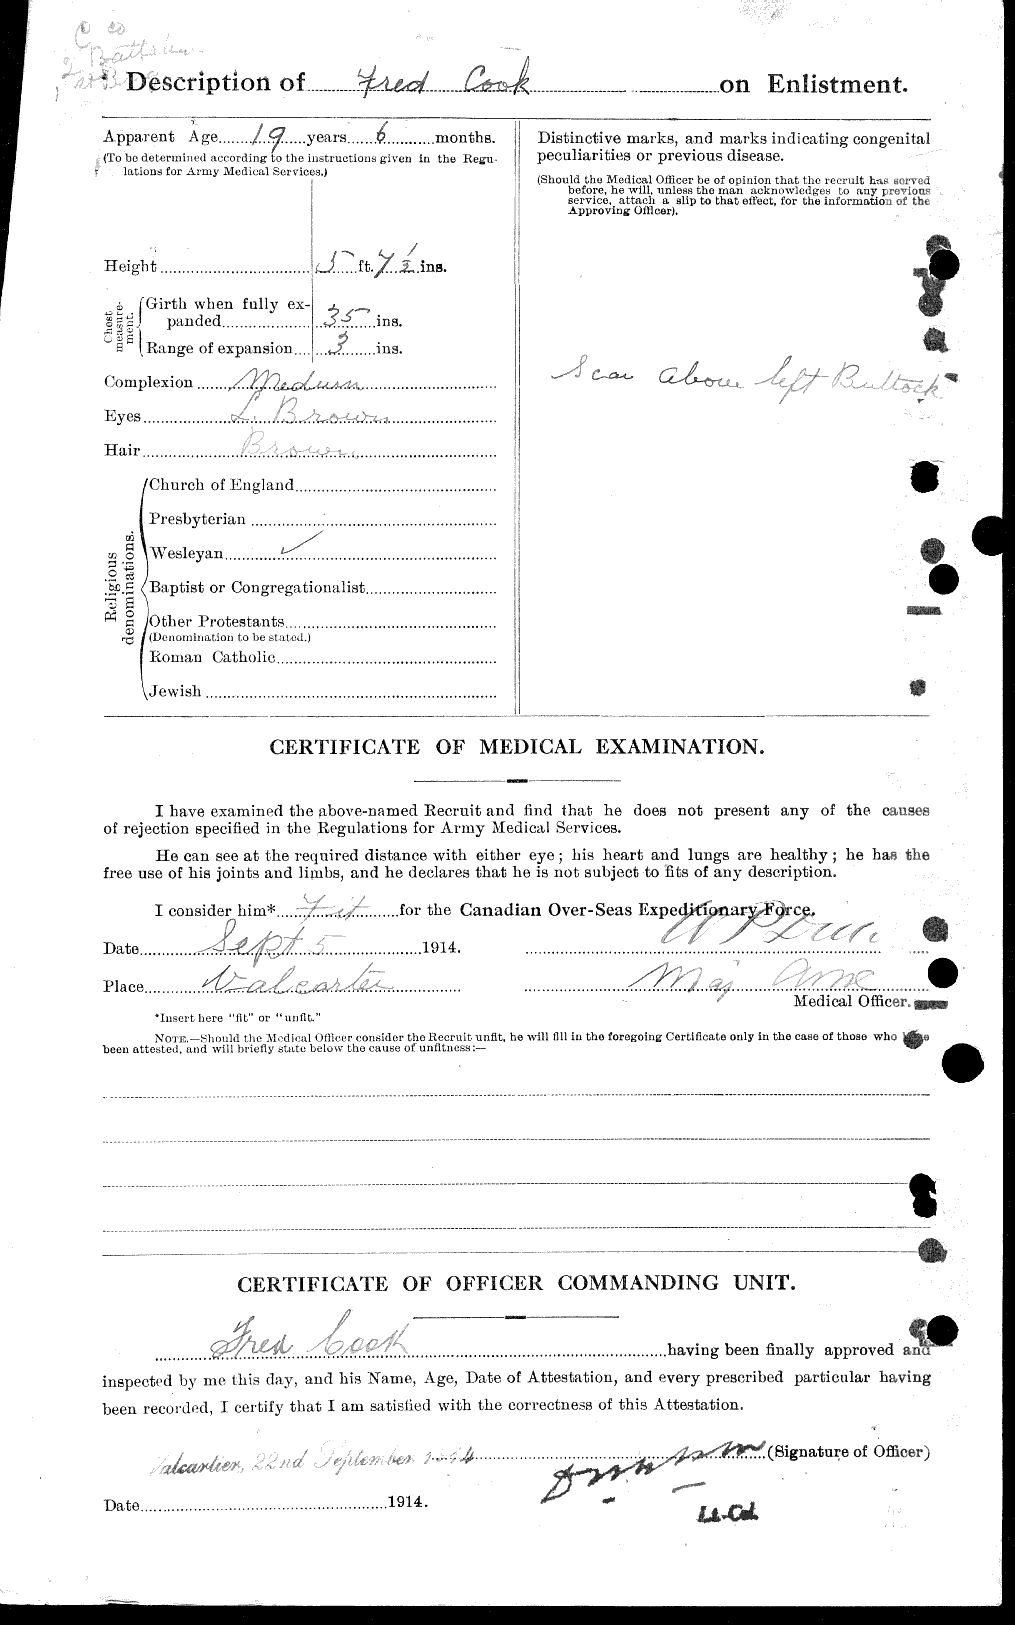 Dossiers du Personnel de la Première Guerre mondiale - CEC 041317b